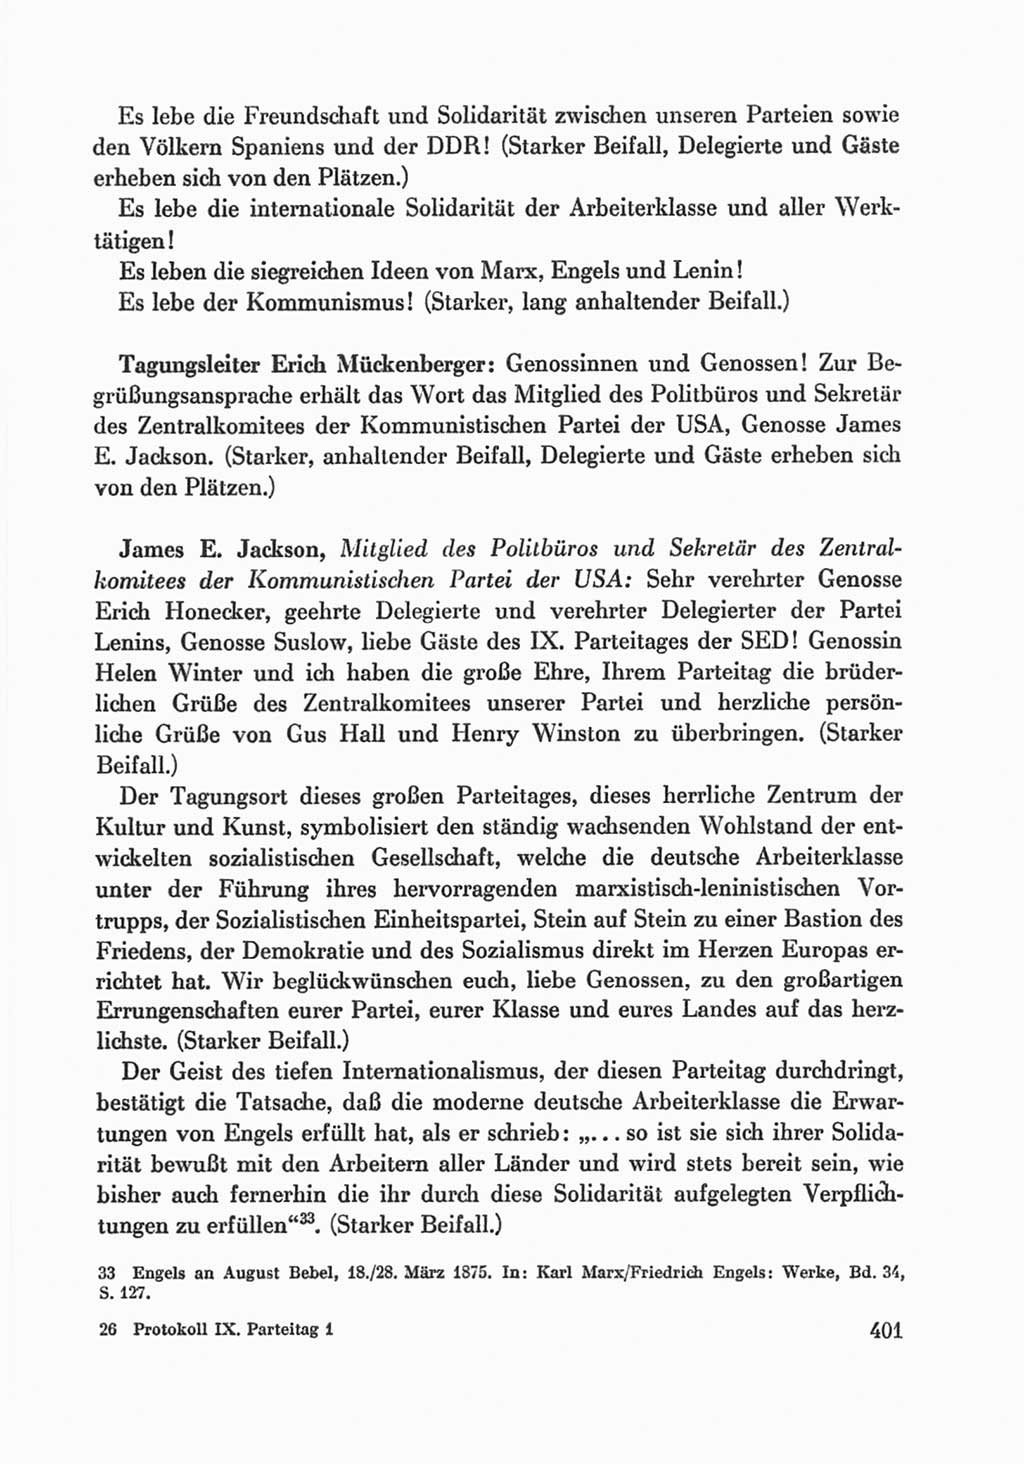 Protokoll der Verhandlungen des Ⅸ. Parteitages der Sozialistischen Einheitspartei Deutschlands (SED) [Deutsche Demokratische Republik (DDR)] 1976, Band 1, Seite 401 (Prot. Verh. Ⅸ. PT SED DDR 1976, Bd. 1, S. 401)